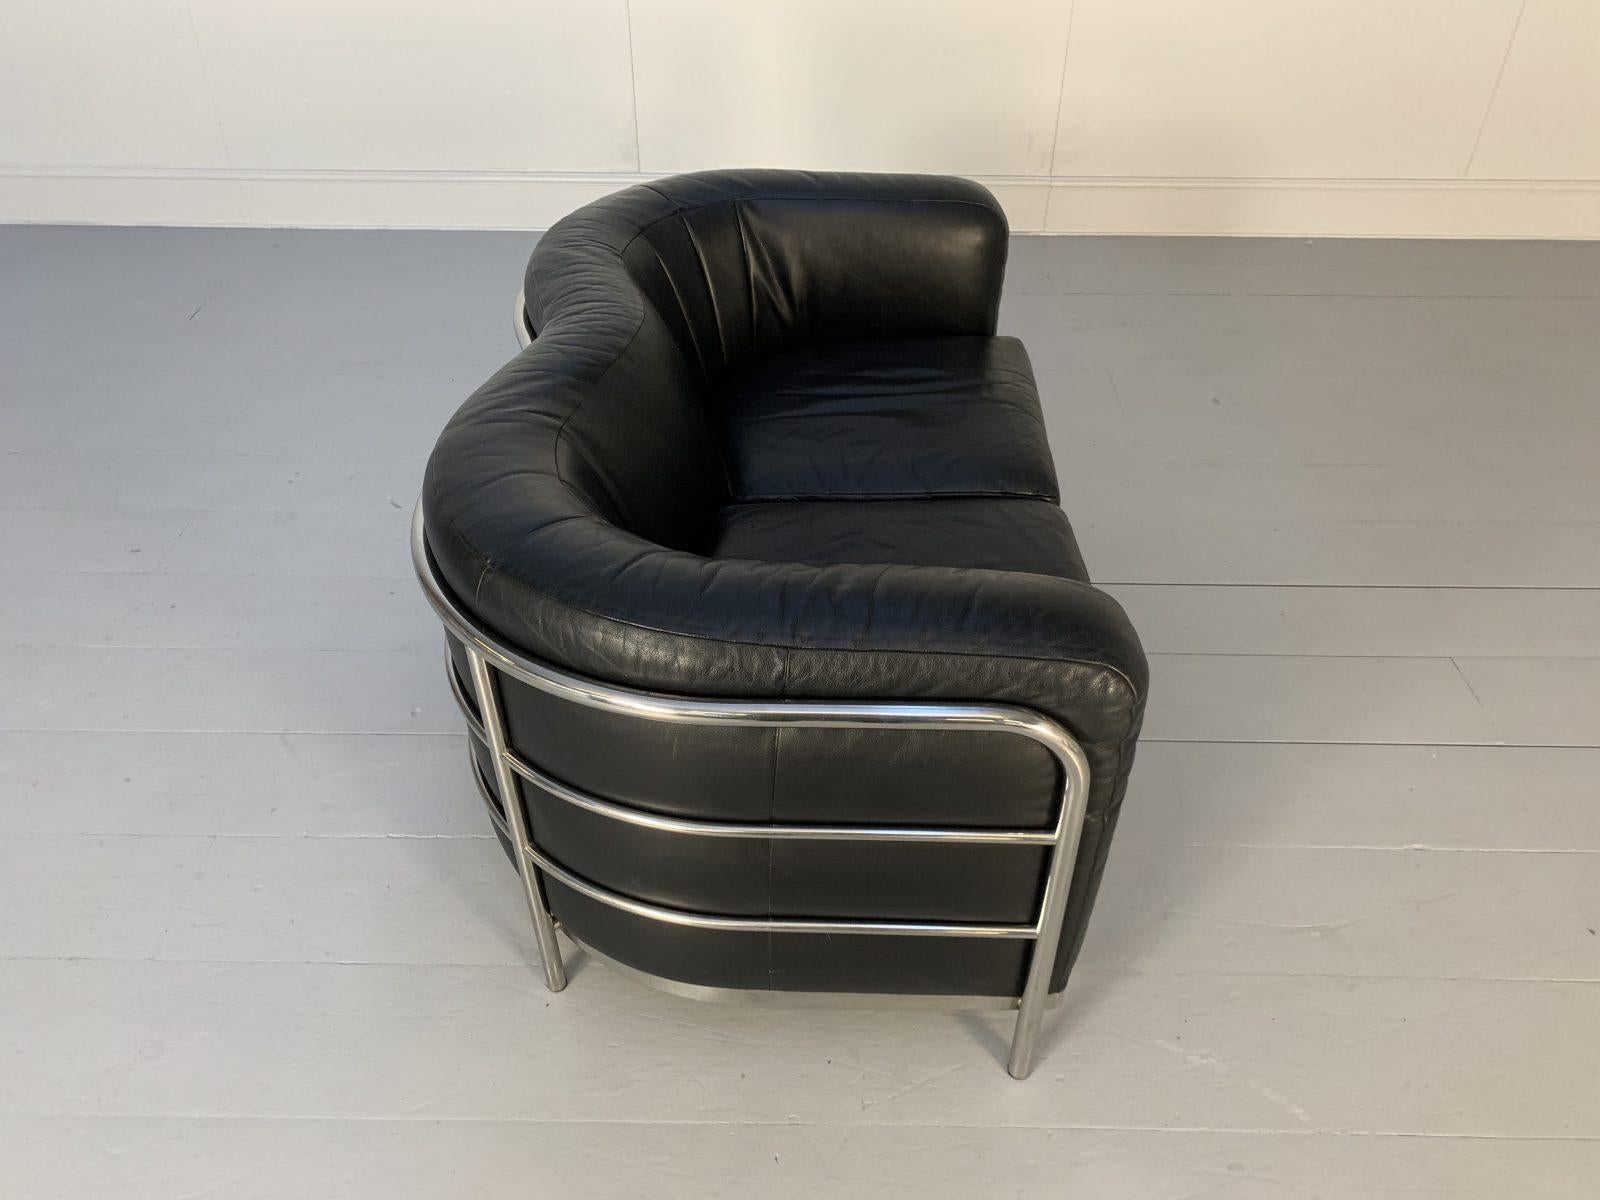 Zanotta “Onda” Sofa – 2-Seat – in Black “Scozia” Leather and Chrome For Sale 6